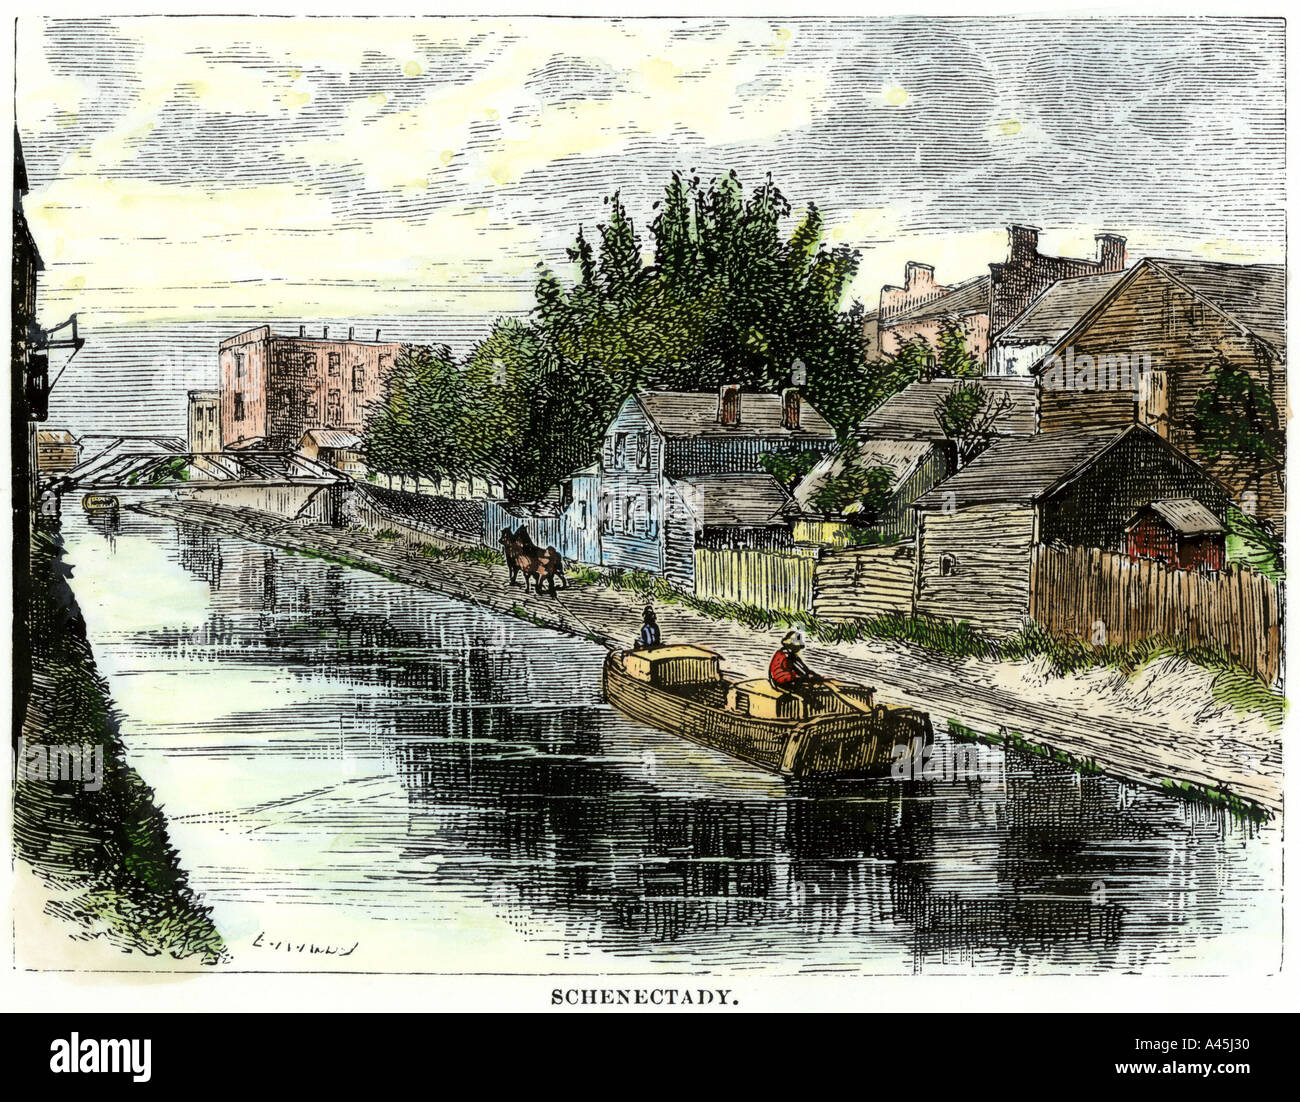 Erie Canal à Schenectady New York des années 1800. À la main, gravure sur bois Banque D'Images